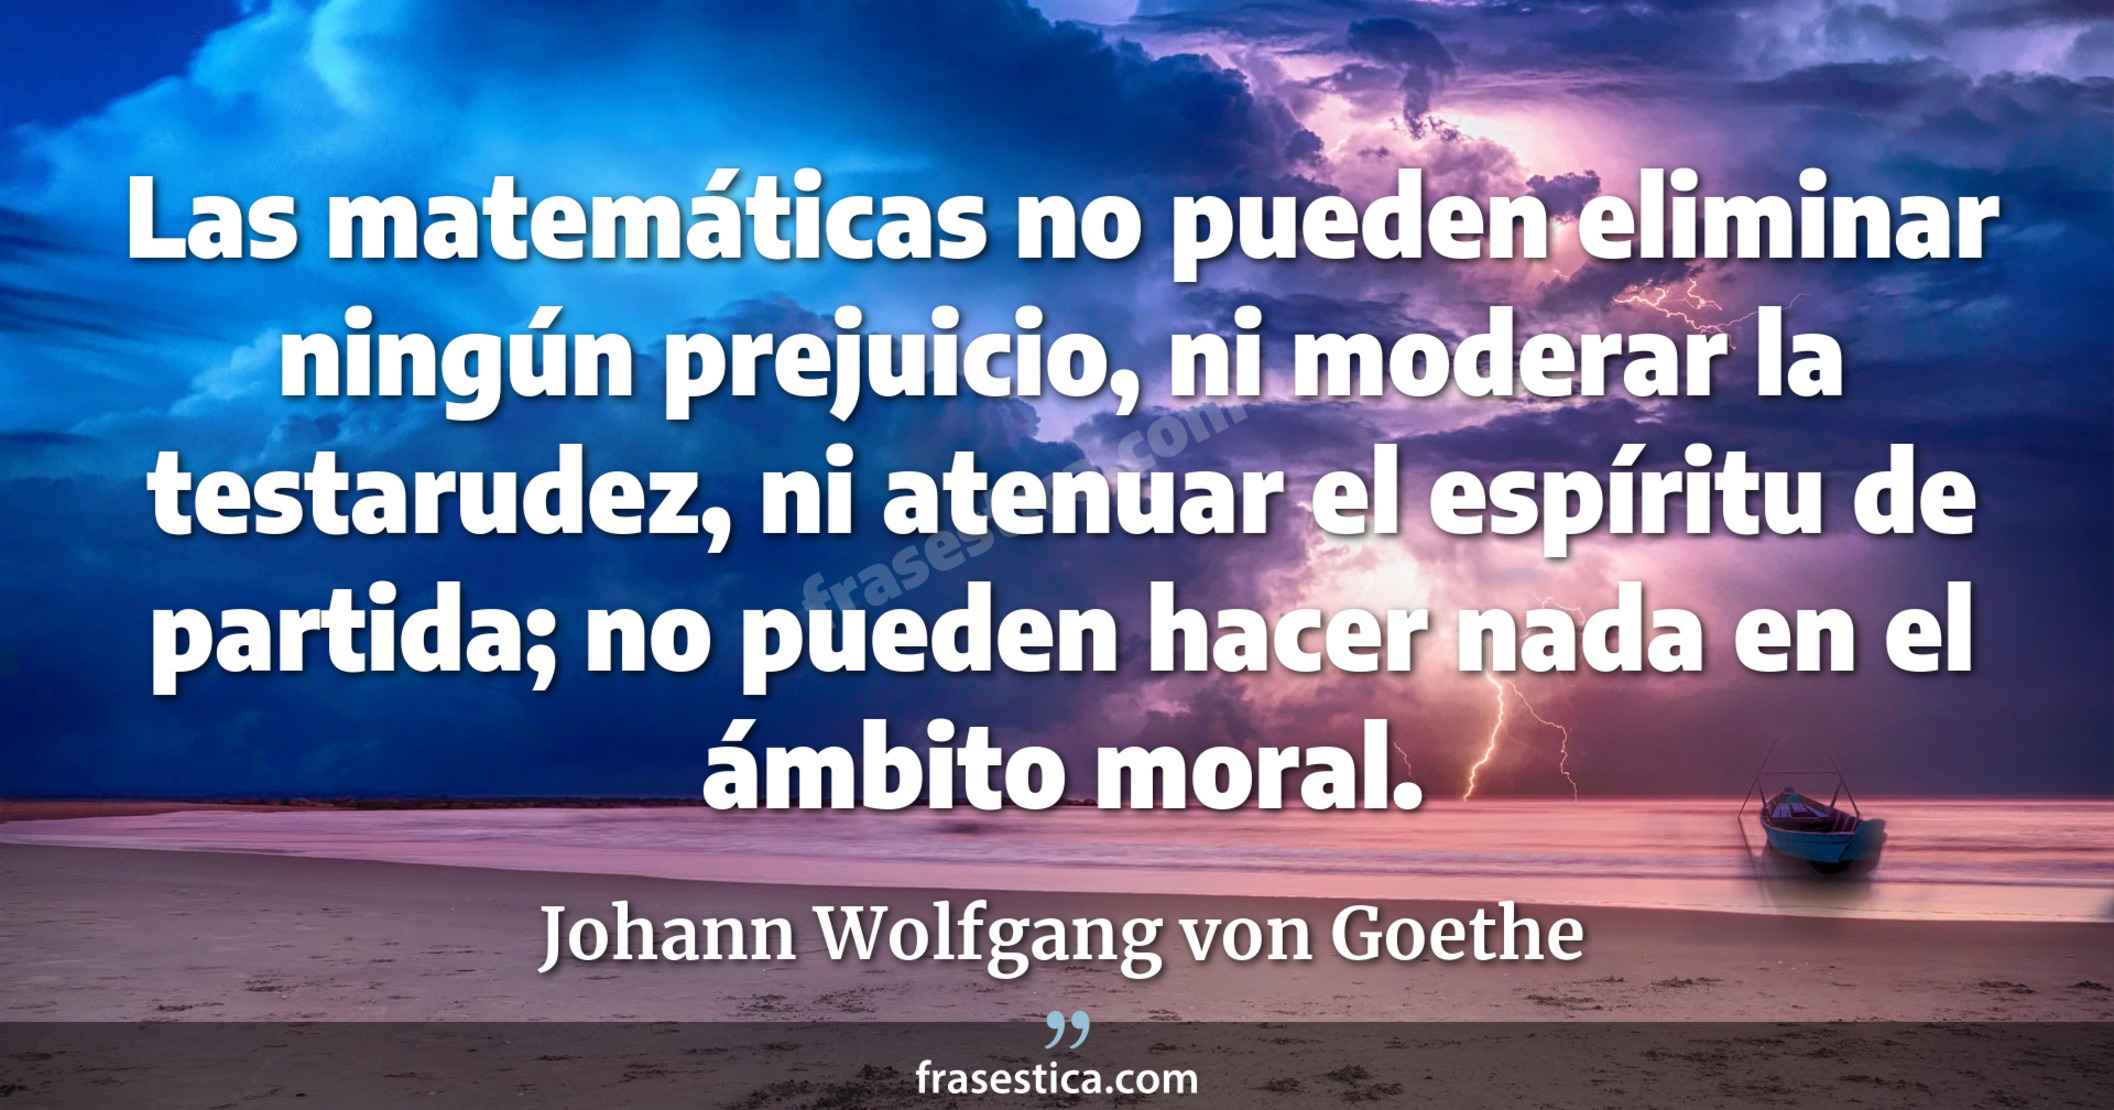 Las matemáticas no pueden eliminar ningún prejuicio, ni moderar la testarudez, ni atenuar el espíritu de partida; no pueden hacer nada en el ámbito moral. - Johann Wolfgang von Goethe